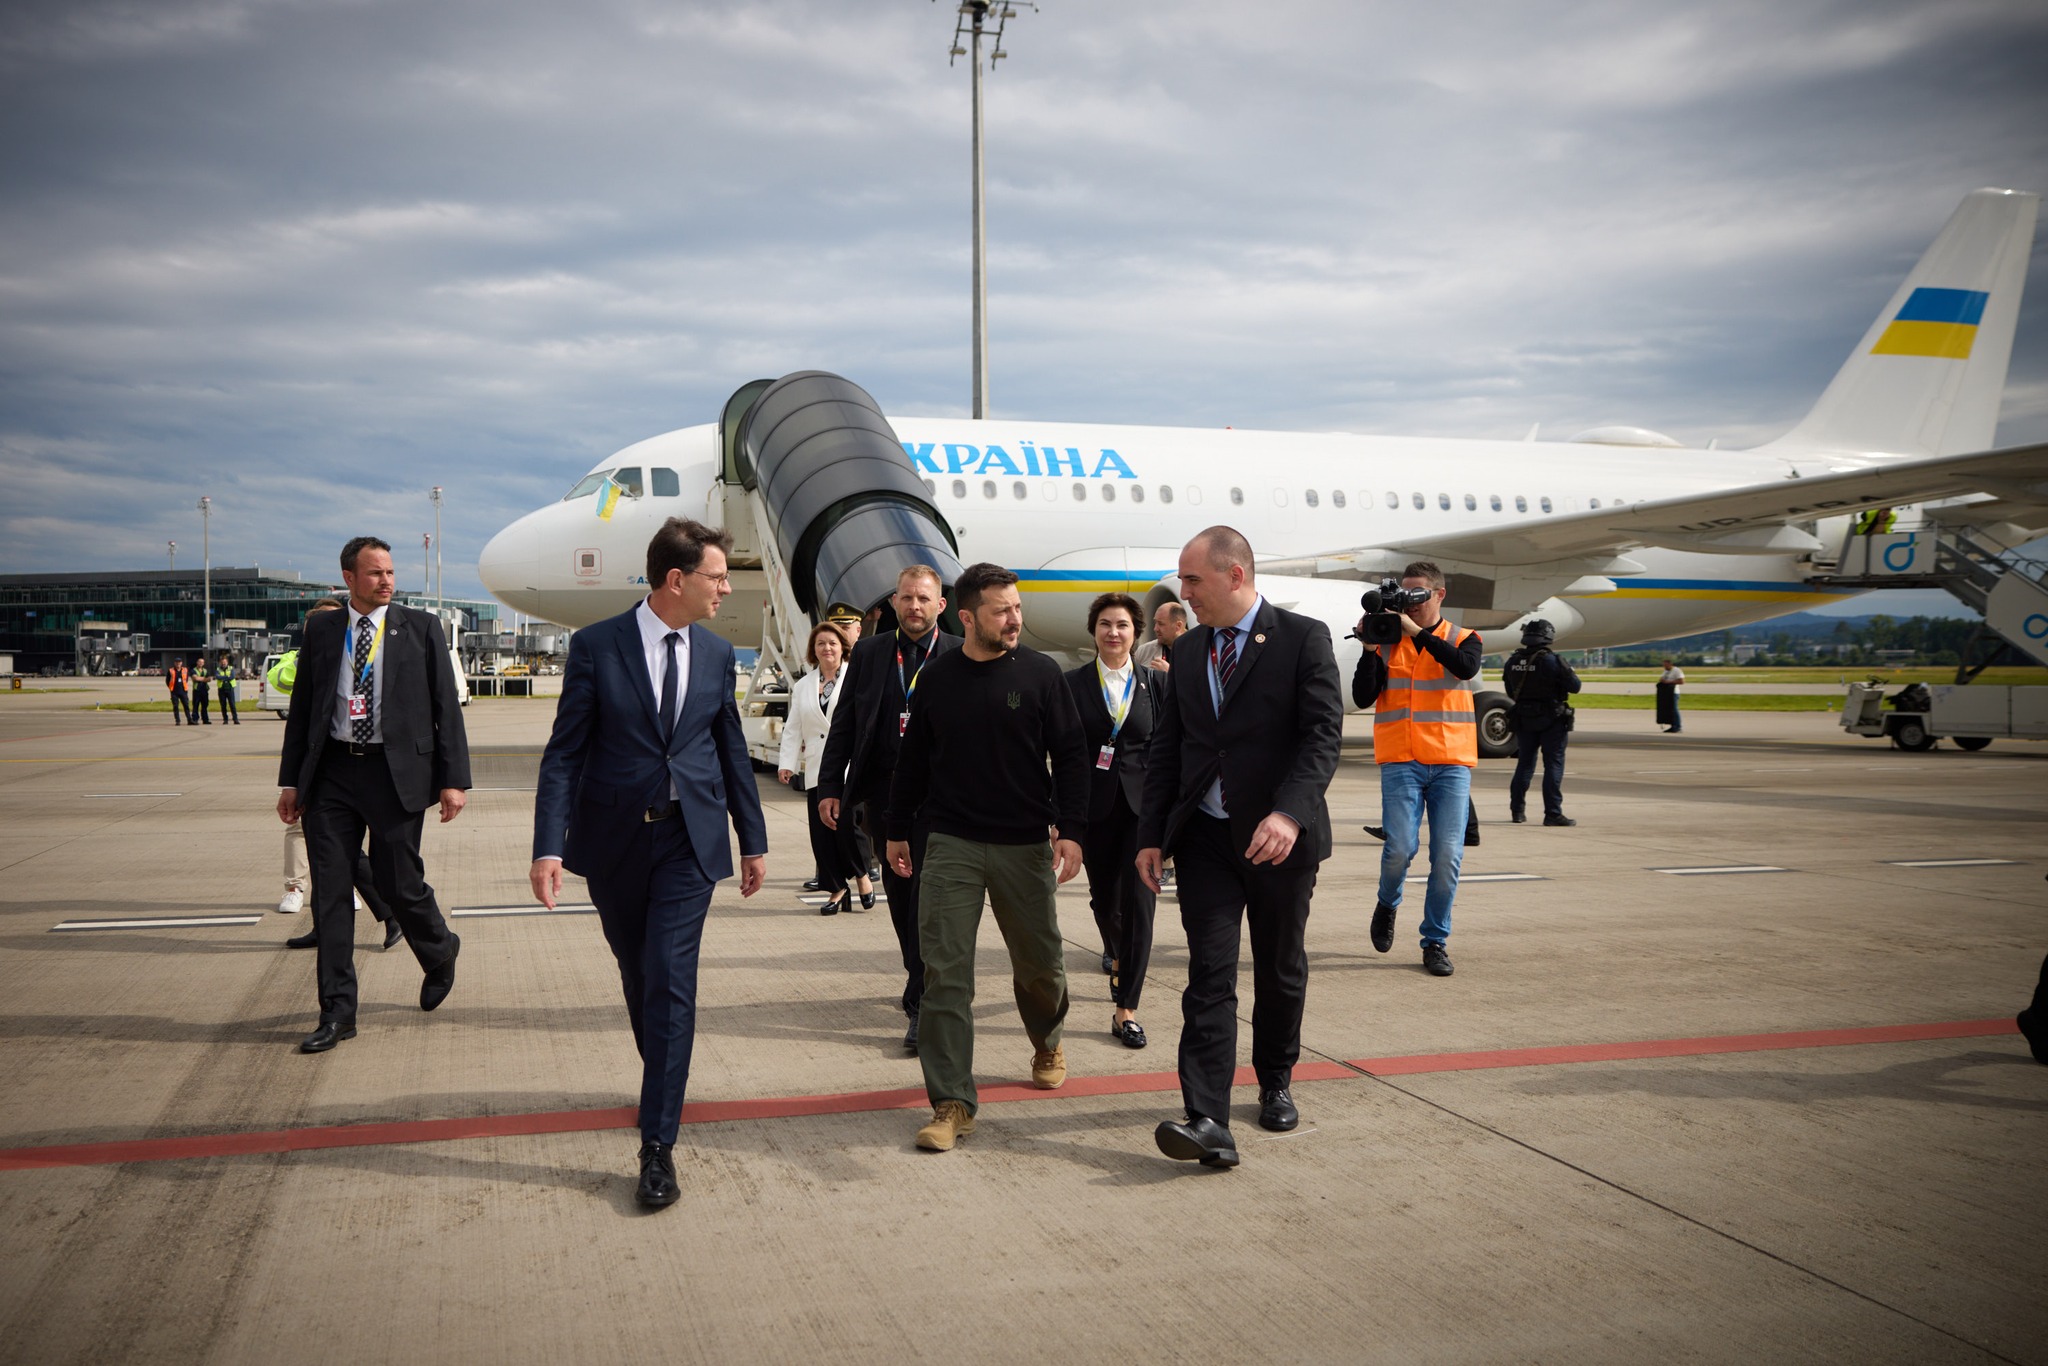 烏克蘭總統澤倫斯基抵達瑞士，出席在琉森舉行的和平峰會。圖/取自Володимир Зеленський臉書